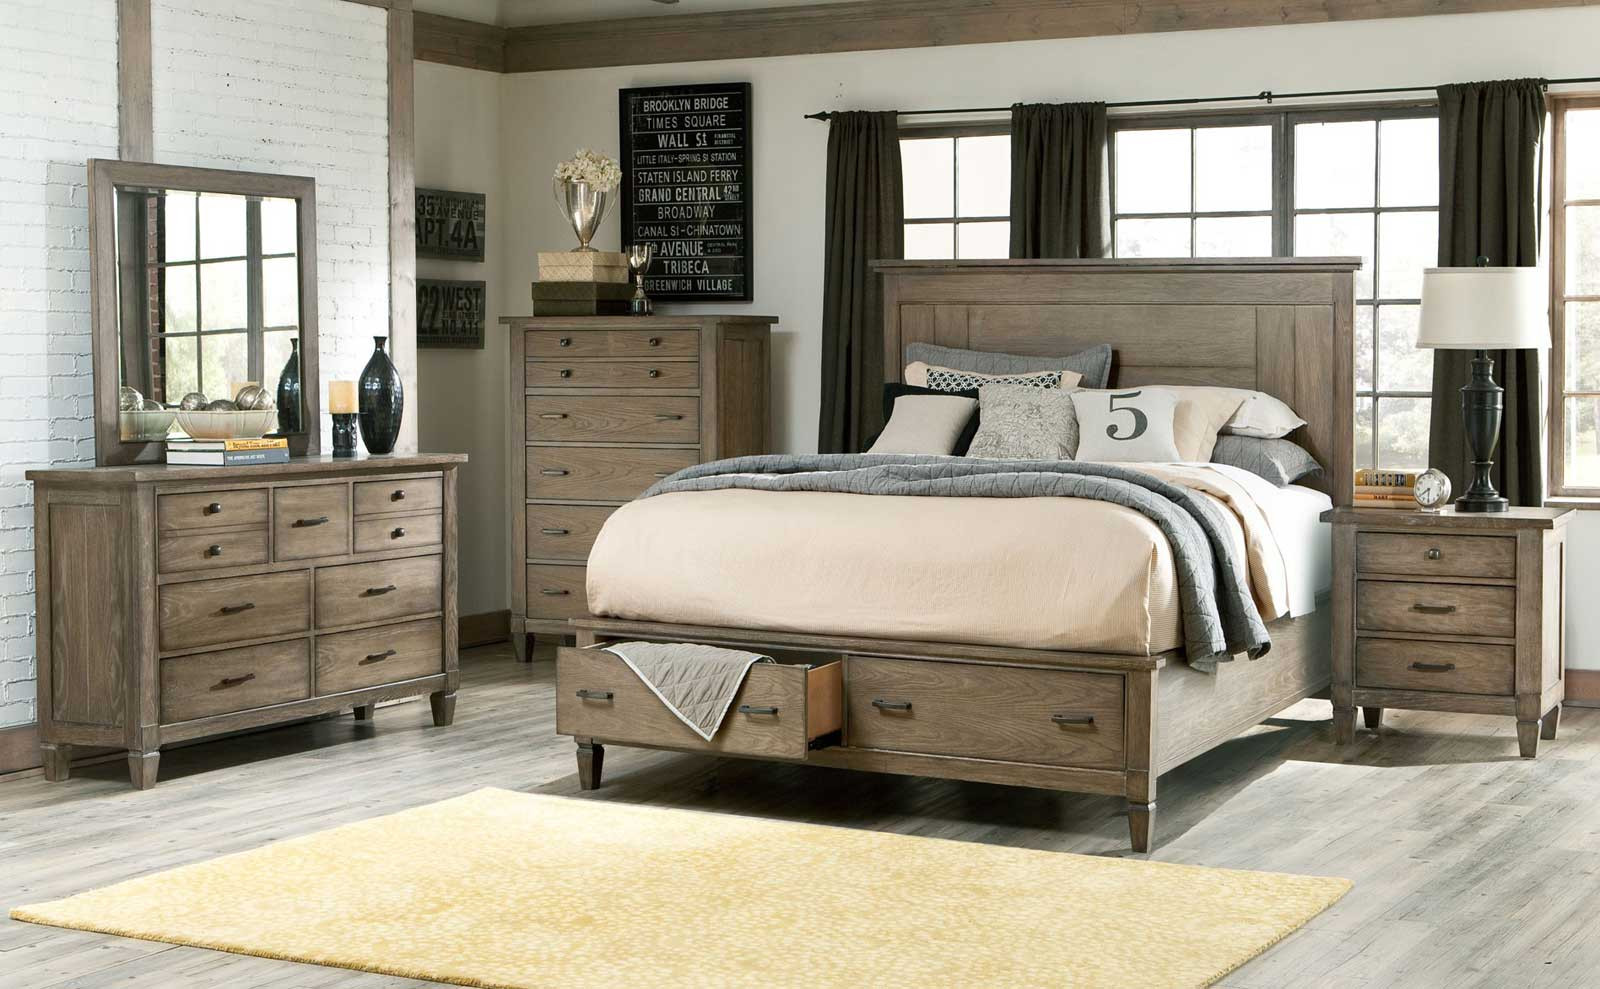 Rustic King Bedroom Sets
 Bedroom Remarkable Rustic Bedroom Sets Design For Bedroom